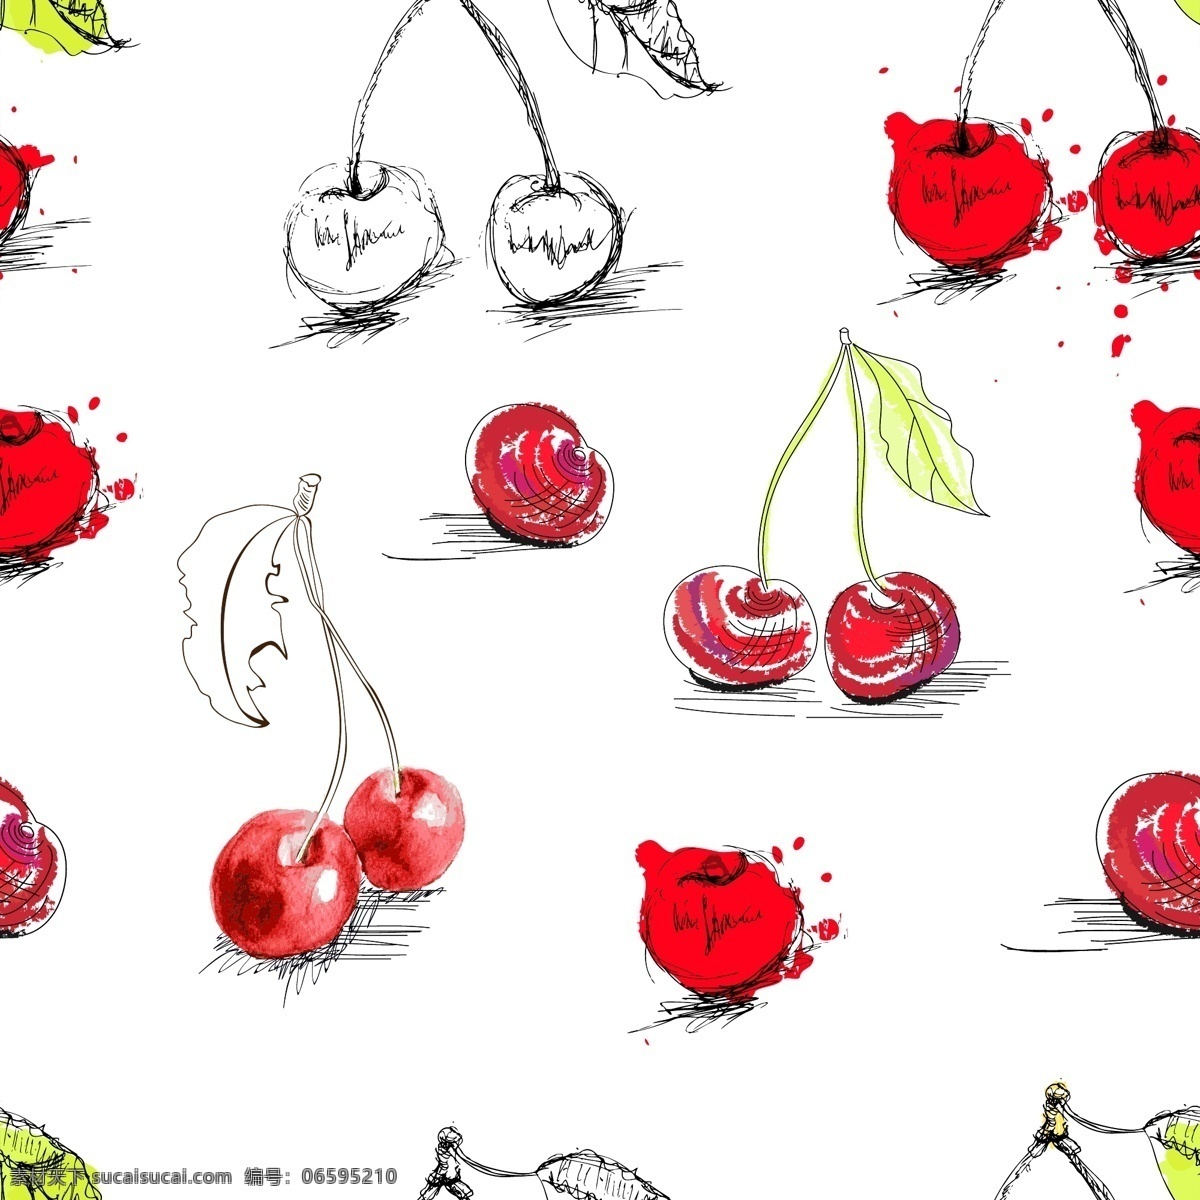 彩绘 水果 插图 矢量 草莓 喷溅墨迹 葡萄 水果插图 线描 叶子 樱桃 桑葚 水果手稿